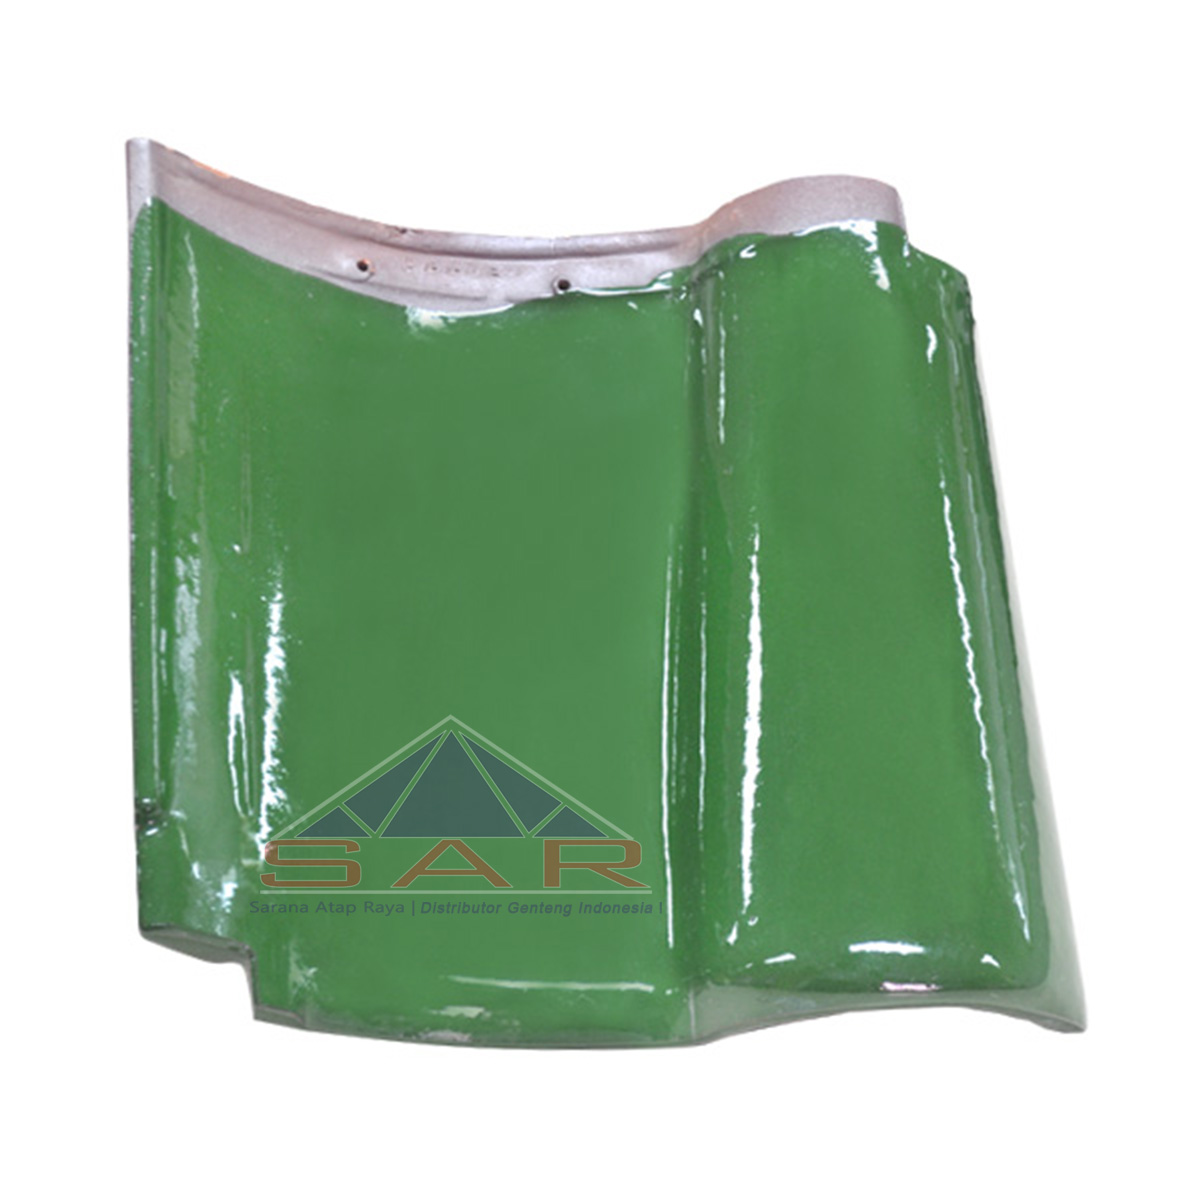  Genteng  KIA Jade Green Distributor Genteng  Karang Pilang 